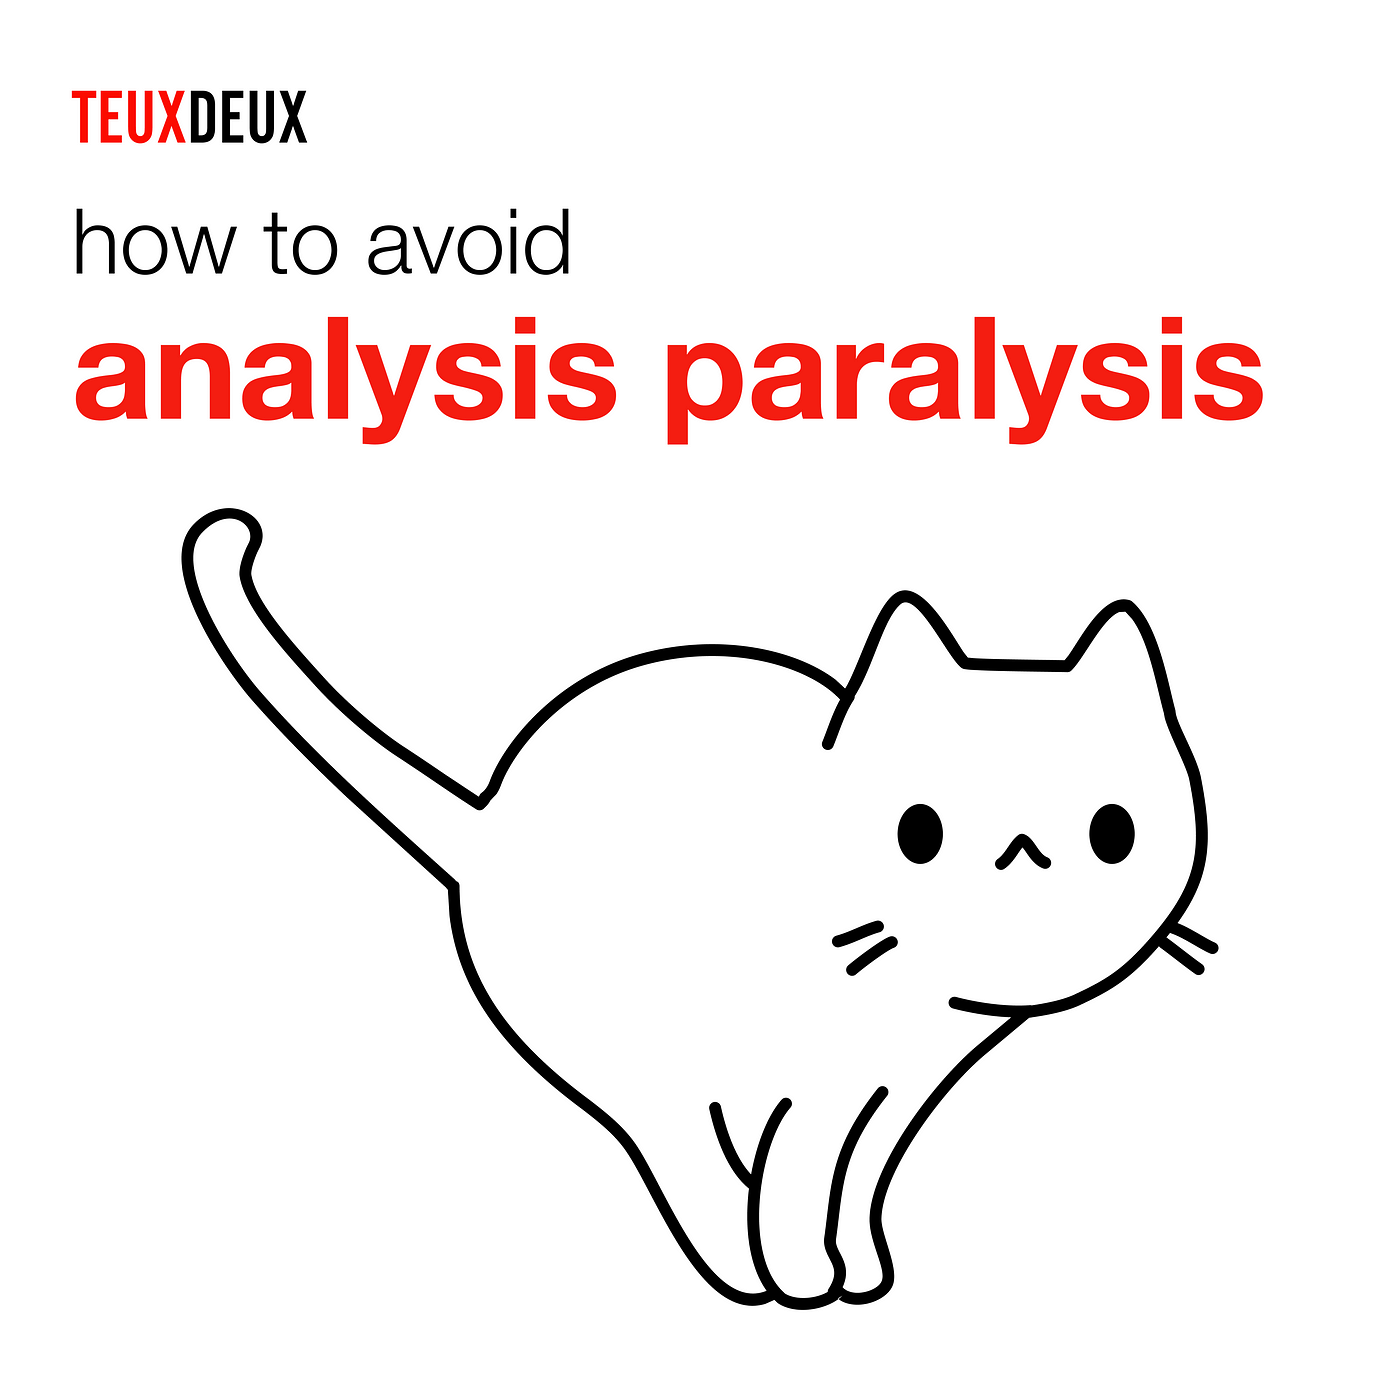 How to Avoid Analysis Paralysis